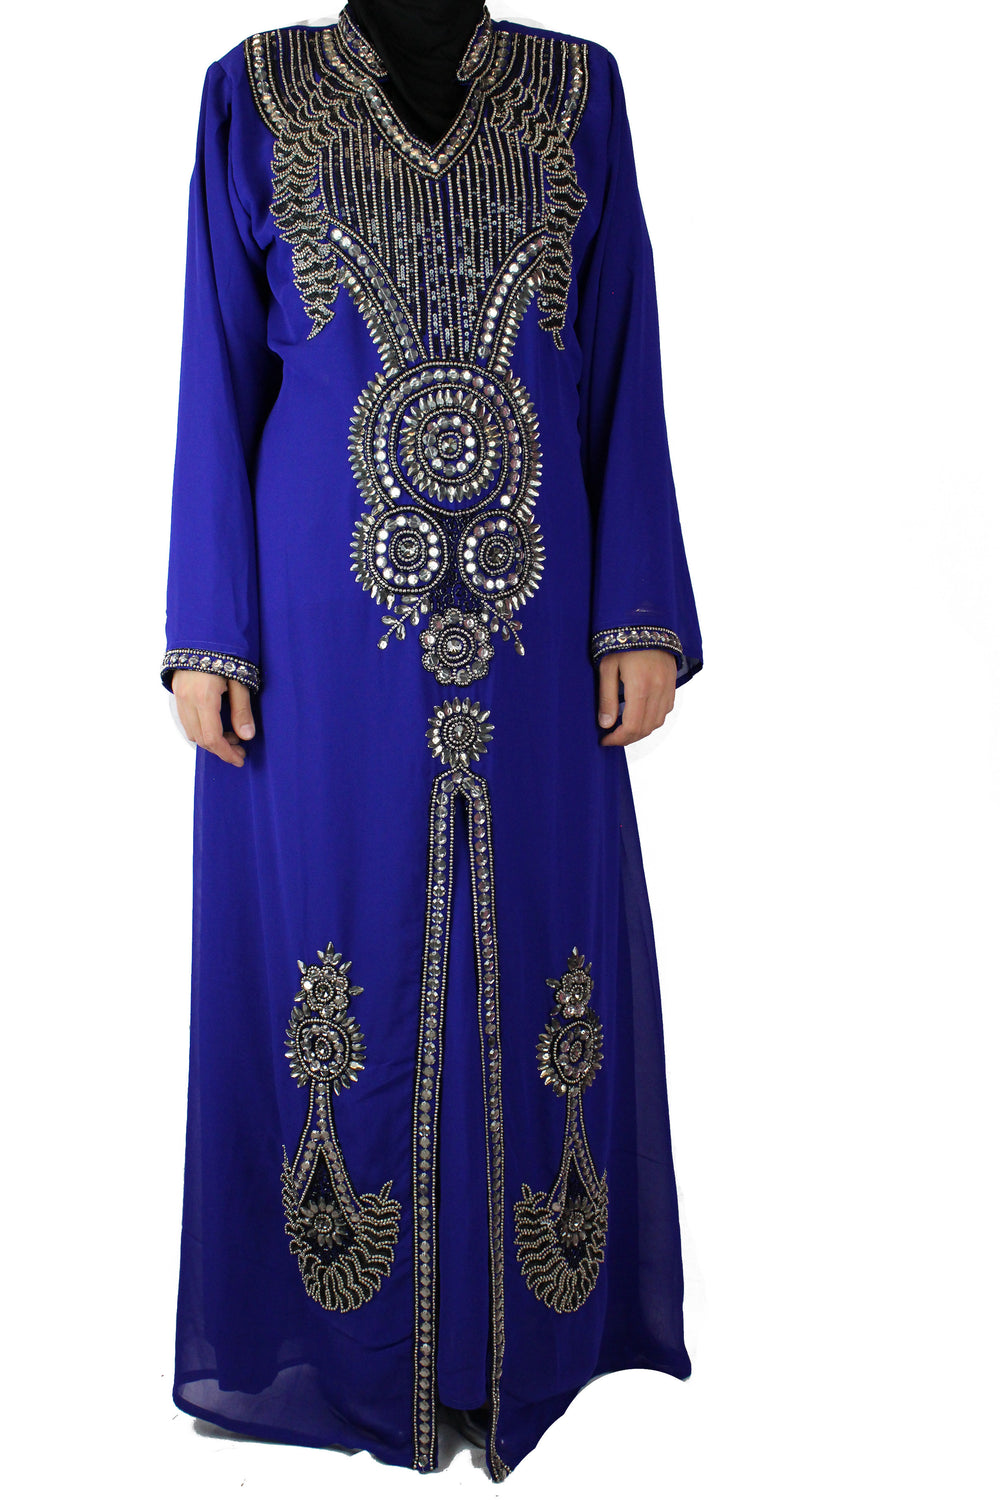 crystal embellished long sleeved kaftan in royal blue